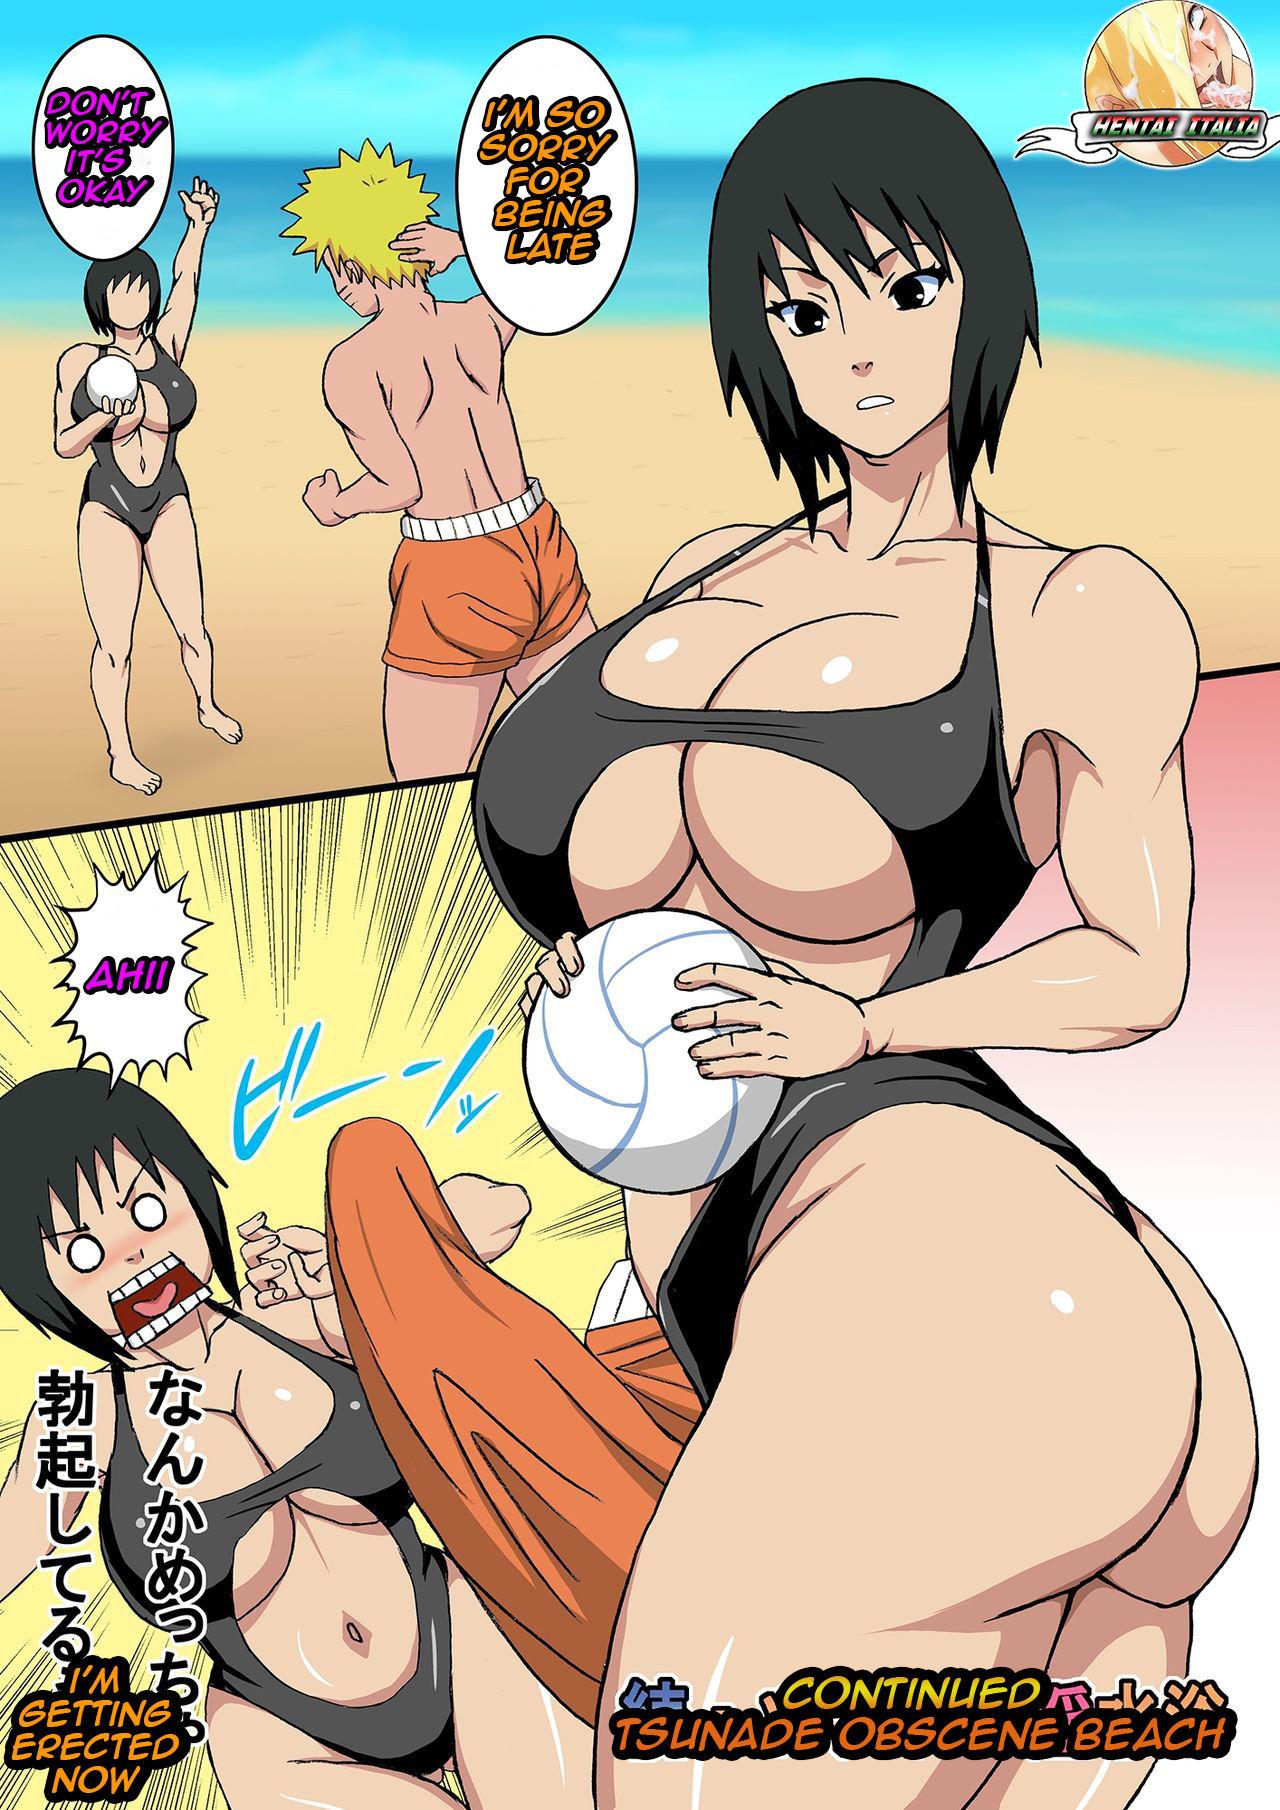 Dominatrix After Tsunade's Obscene Beach - Naruto Boy - Page 3